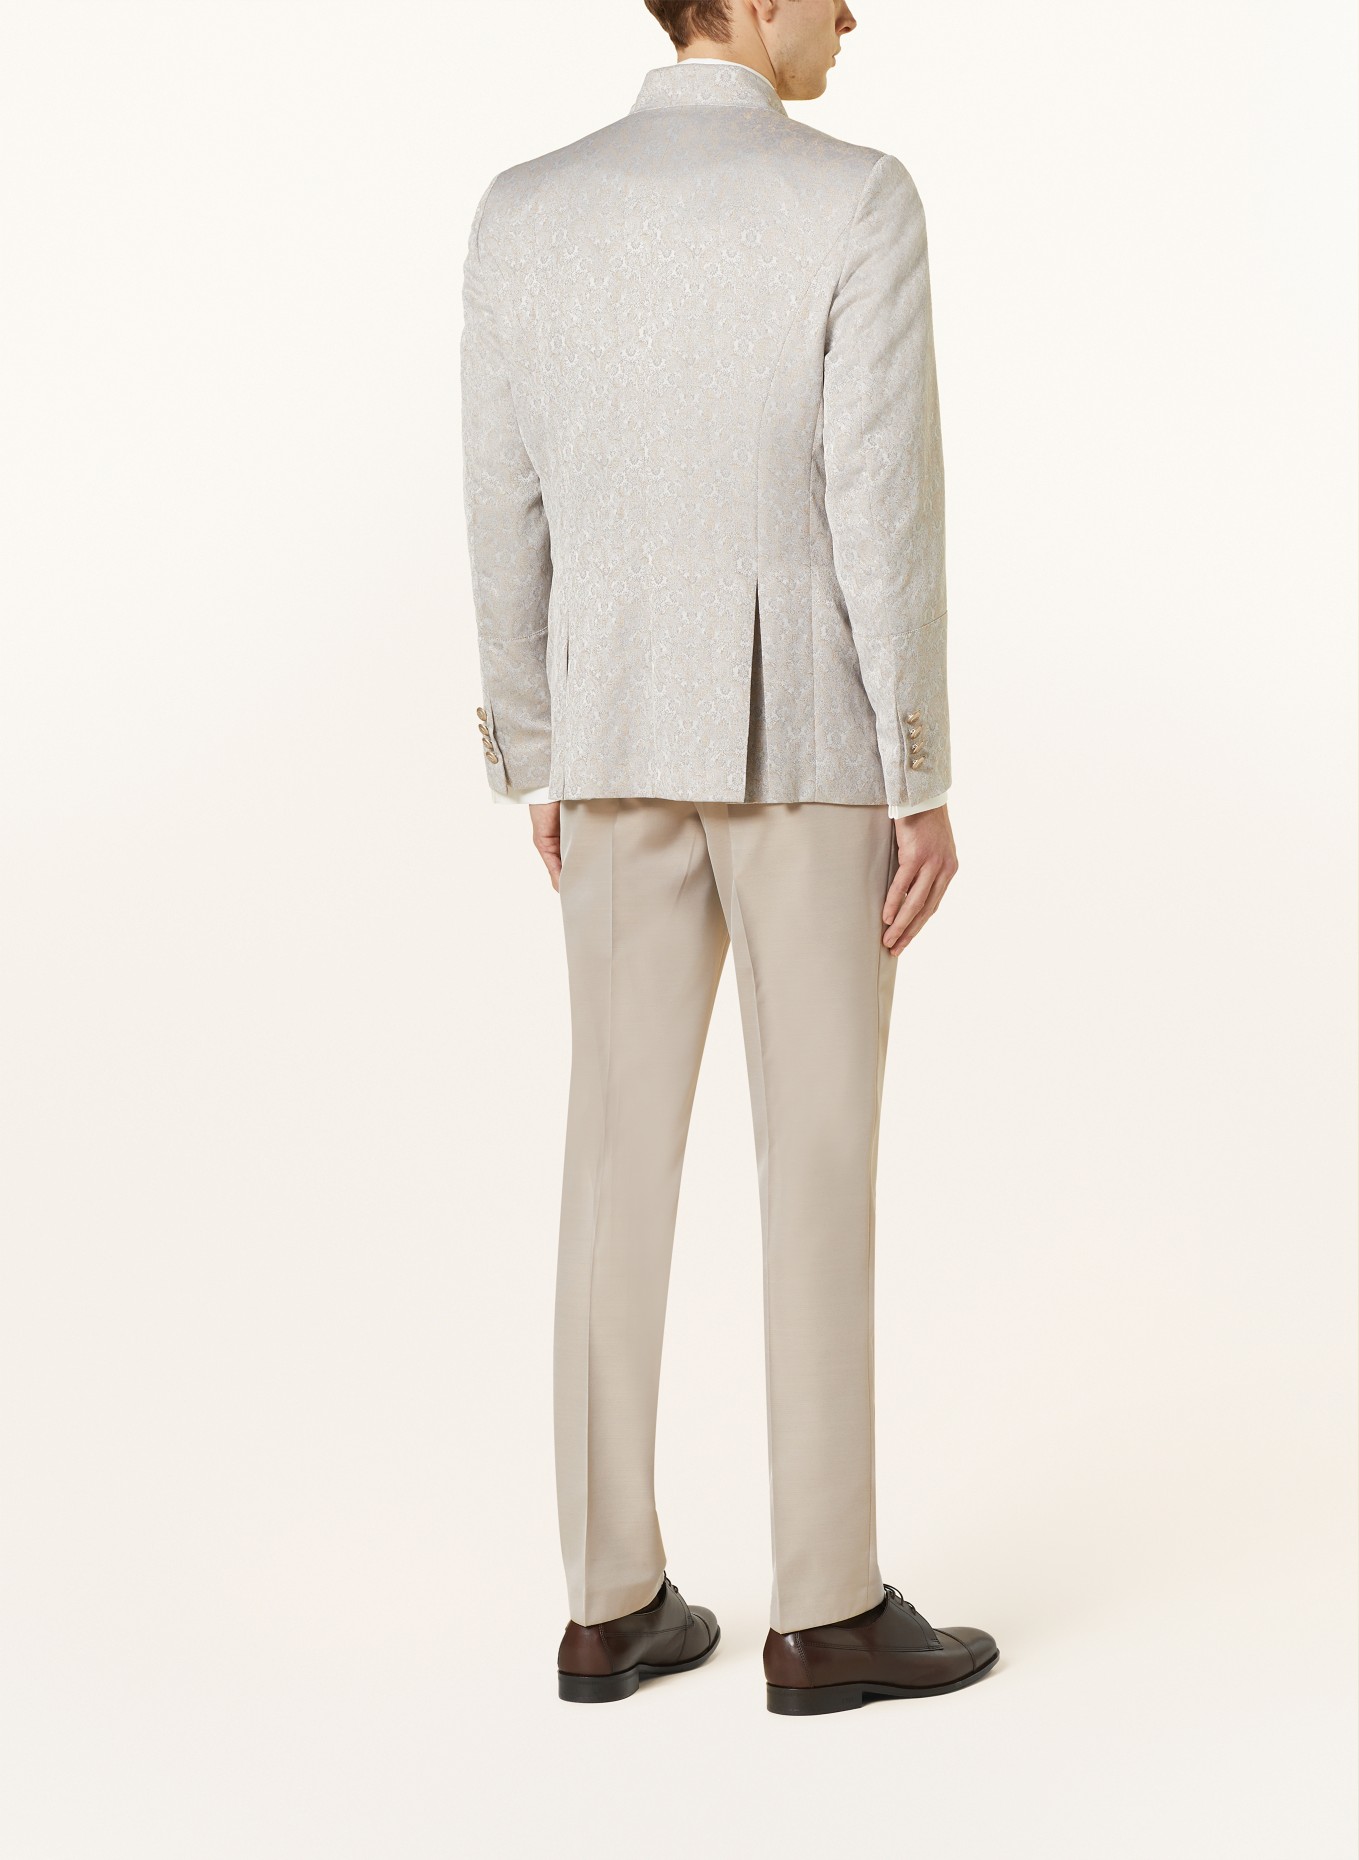 WILVORST Tailored jacket extra slim fit, Color: 083 Beige gem. (Image 3)